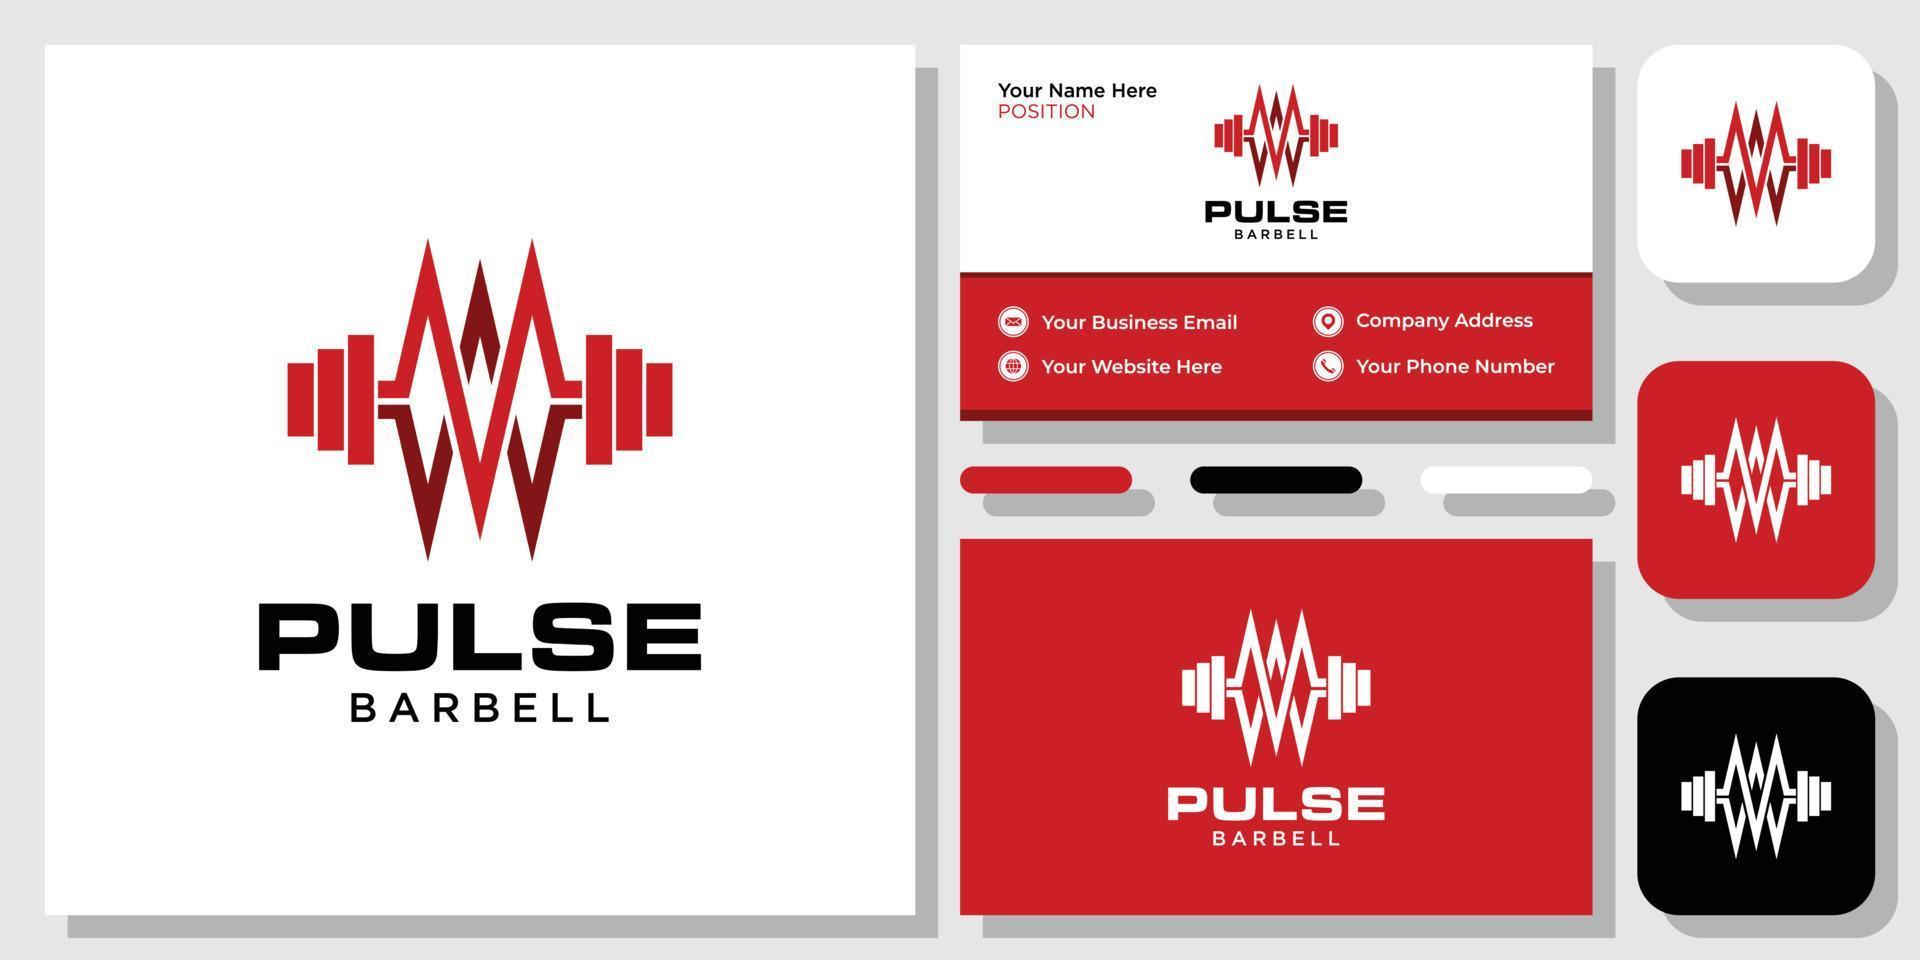 pulse barbell gezonde hartslag sportschool training fysiek met sjabloon voor visitekaartjes vector